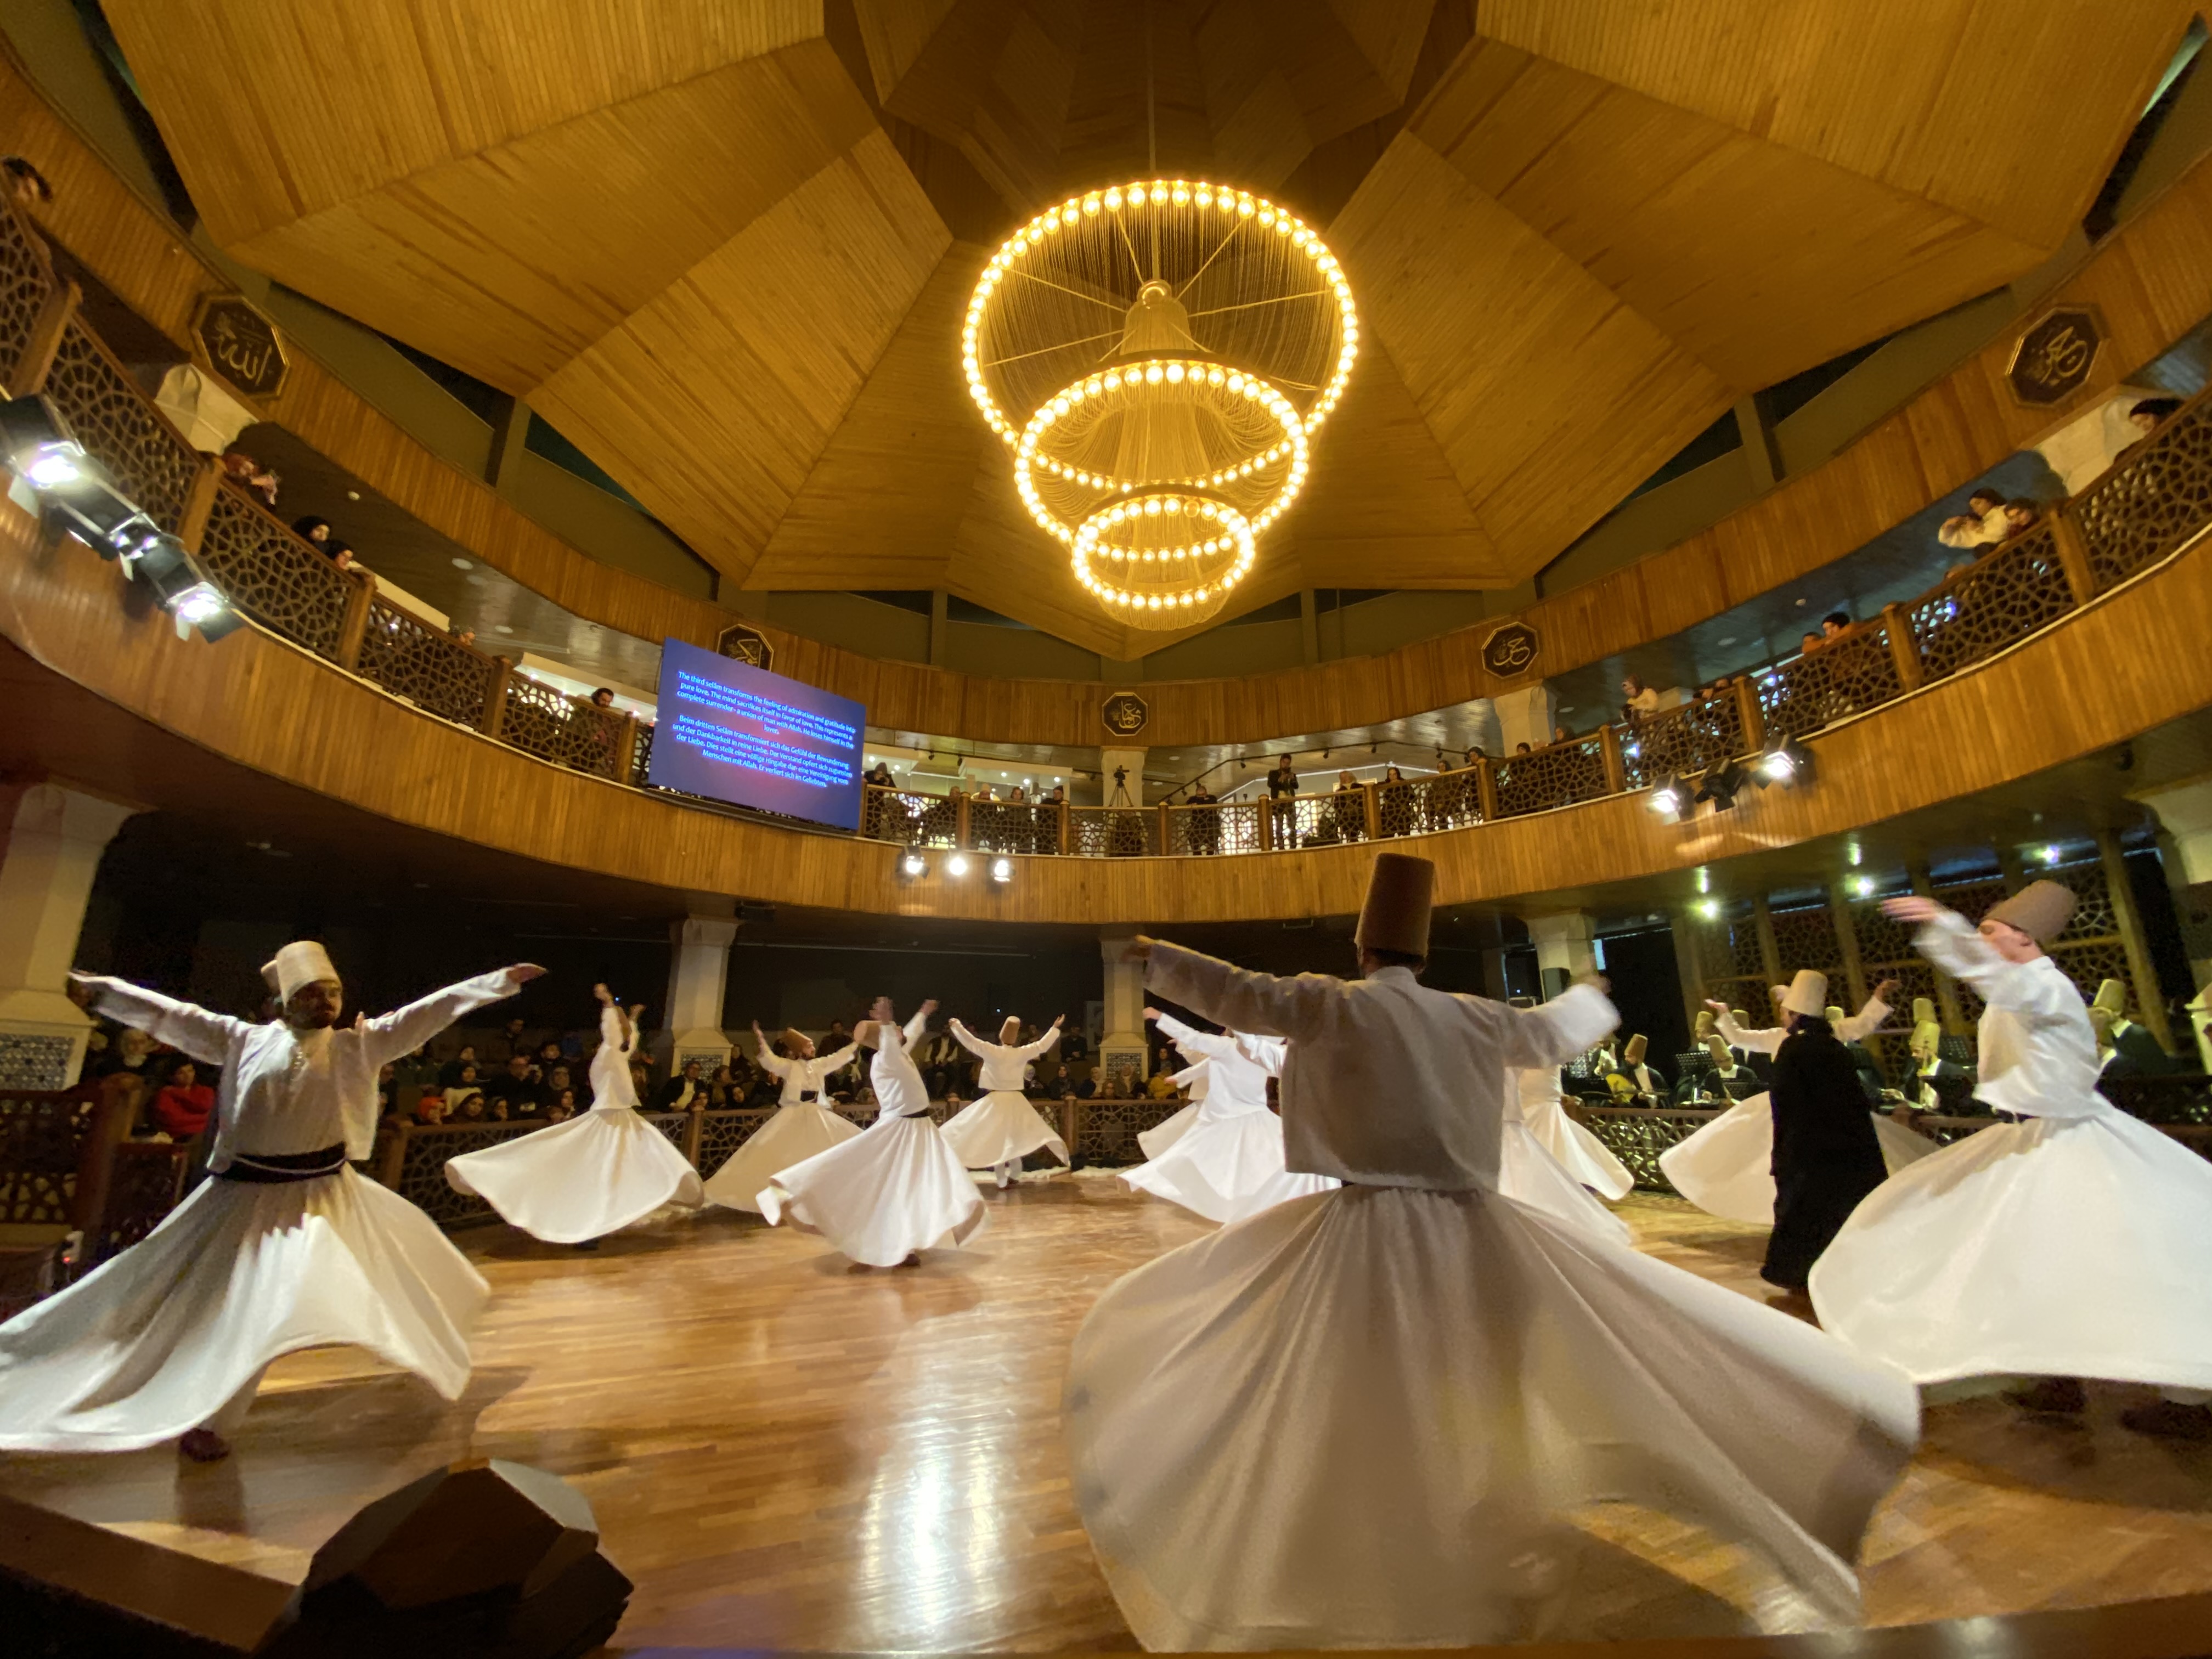 トルコのメヴレヴィー教団による旋回舞踊（セマー）の様子